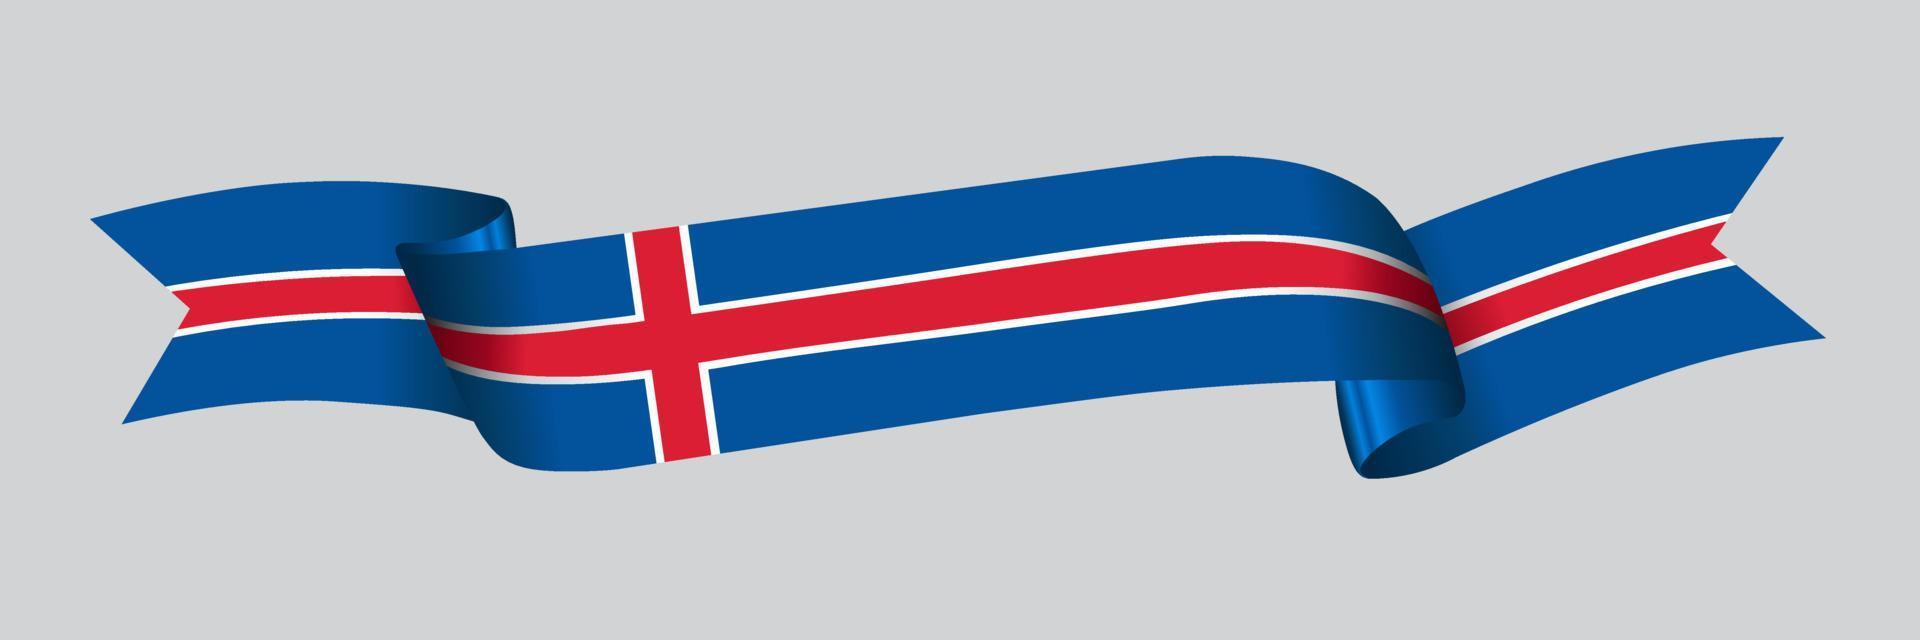 Bandeira 3D da Islândia na faixa de opções. vetor